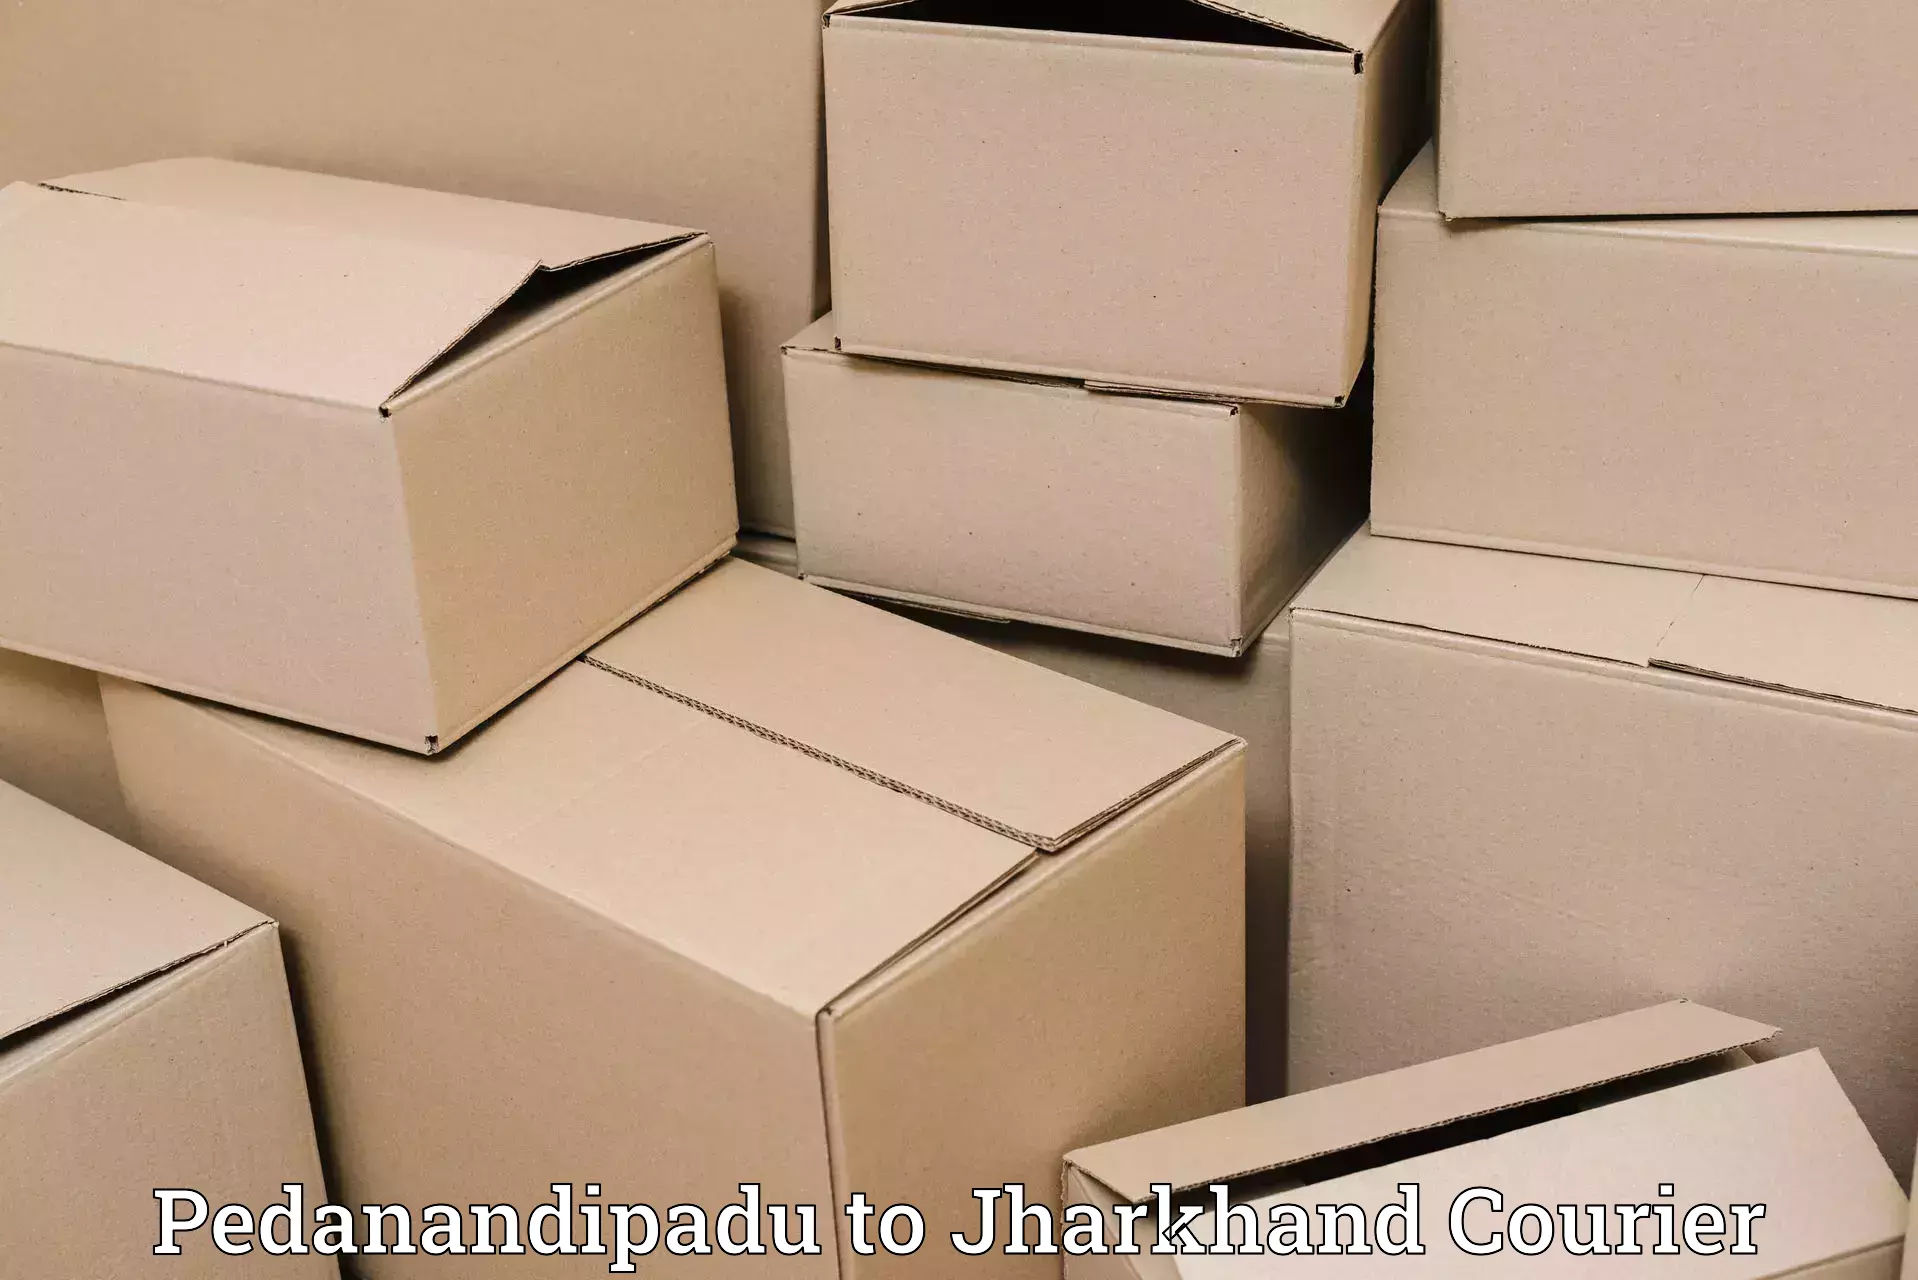 Advanced shipping network Pedanandipadu to Jharkhand